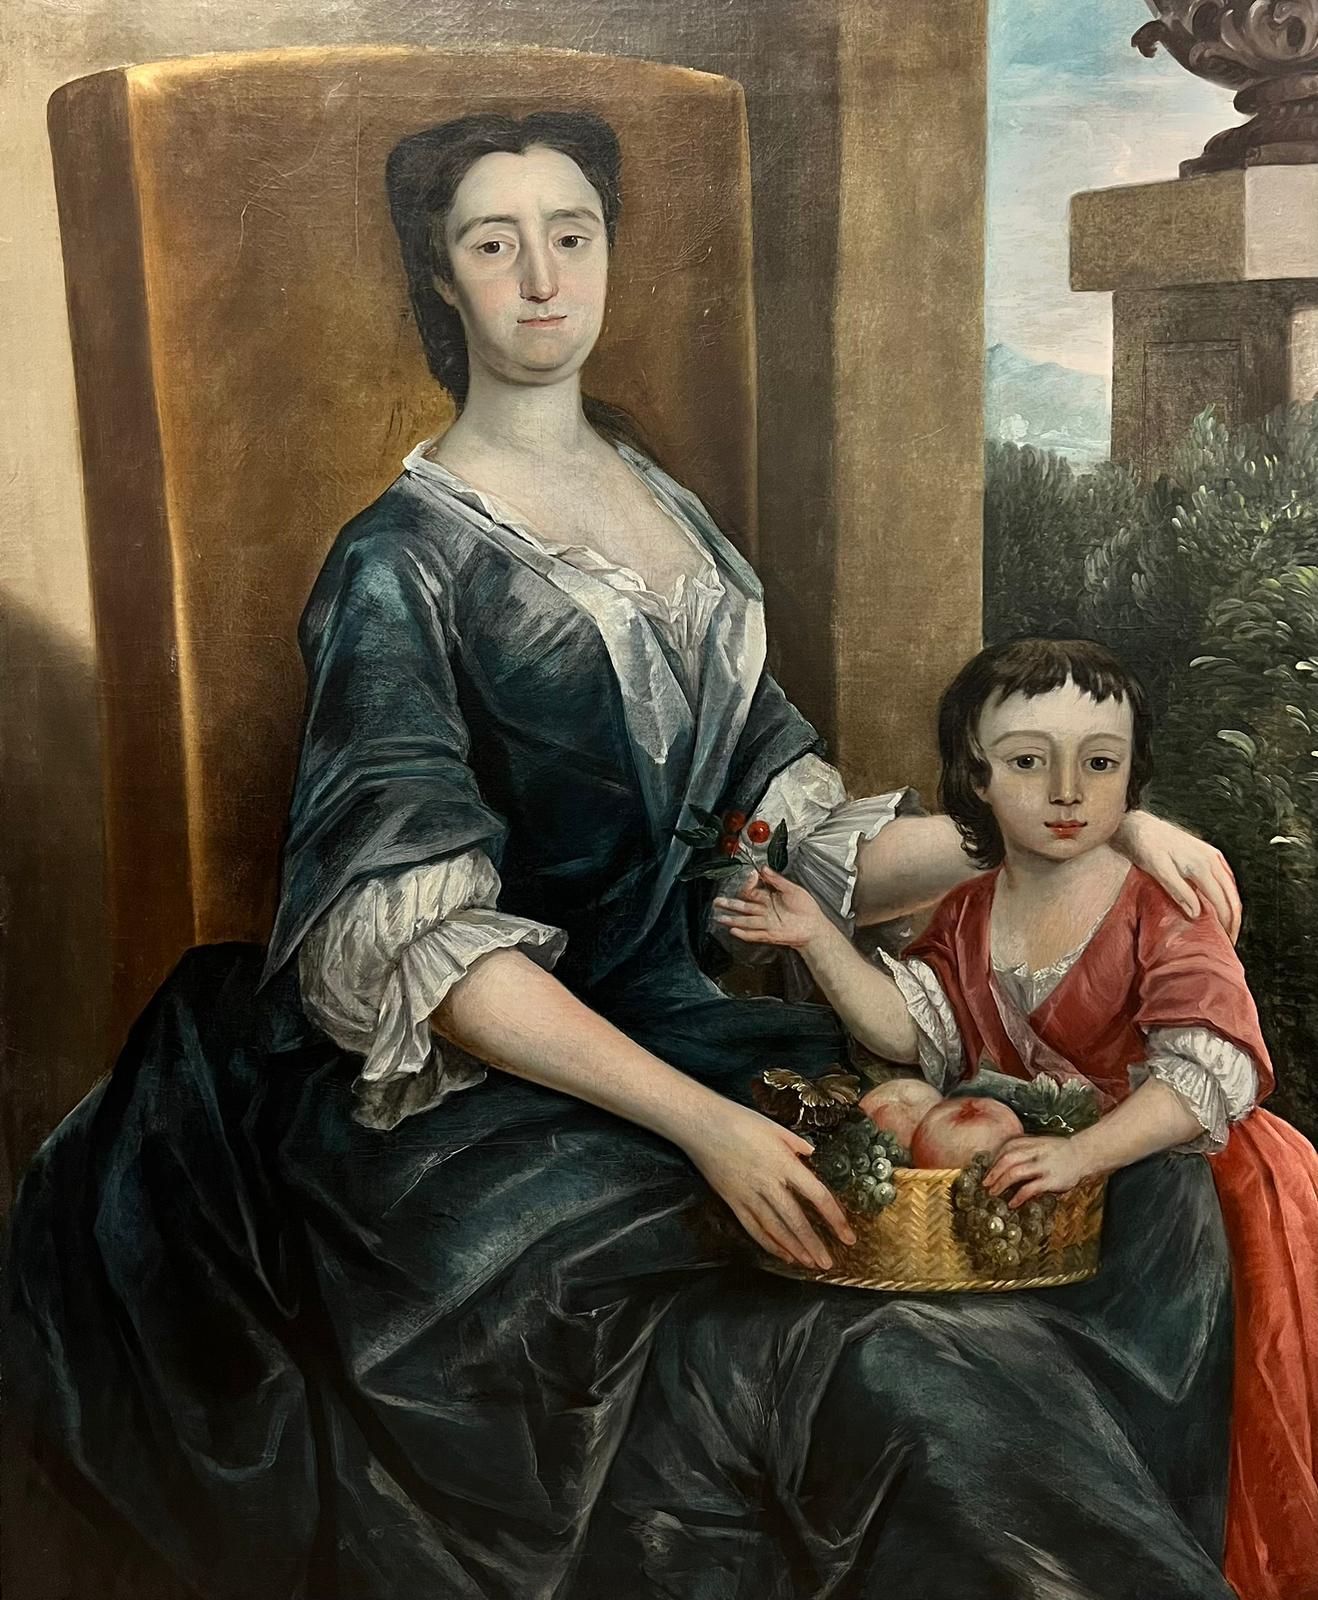 Portrait Painting English 18th Century - Grand portrait de mère et enfant de style aristocrate anglais du 18ème siècle, huile